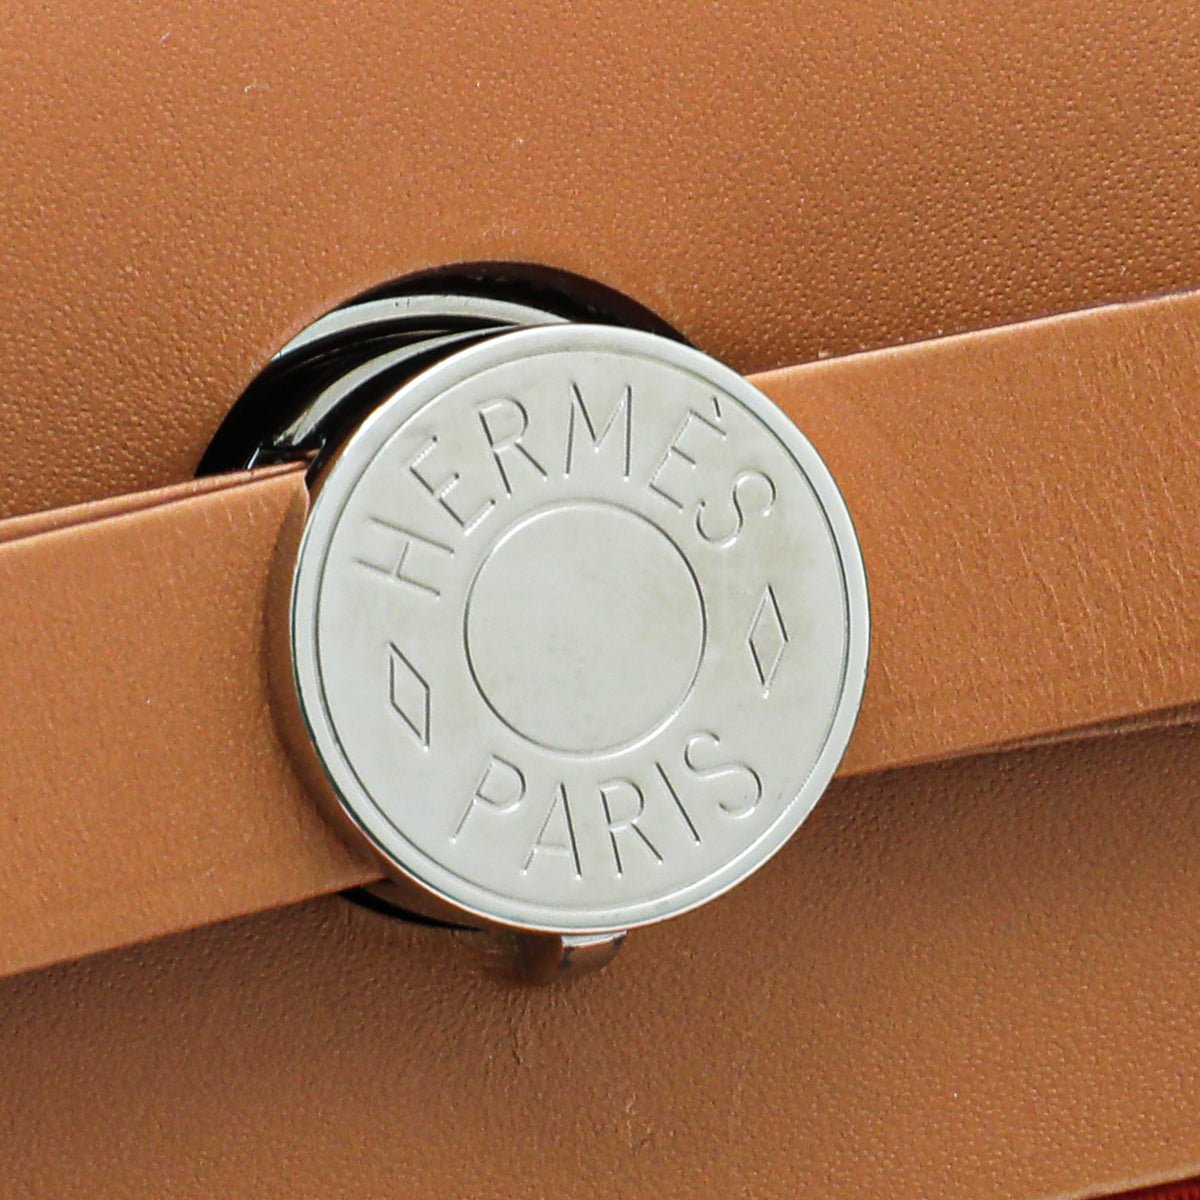 Hermes Herbag ZIip PM Silver Buckle Lock Tote/Shoulder Bag - Shop